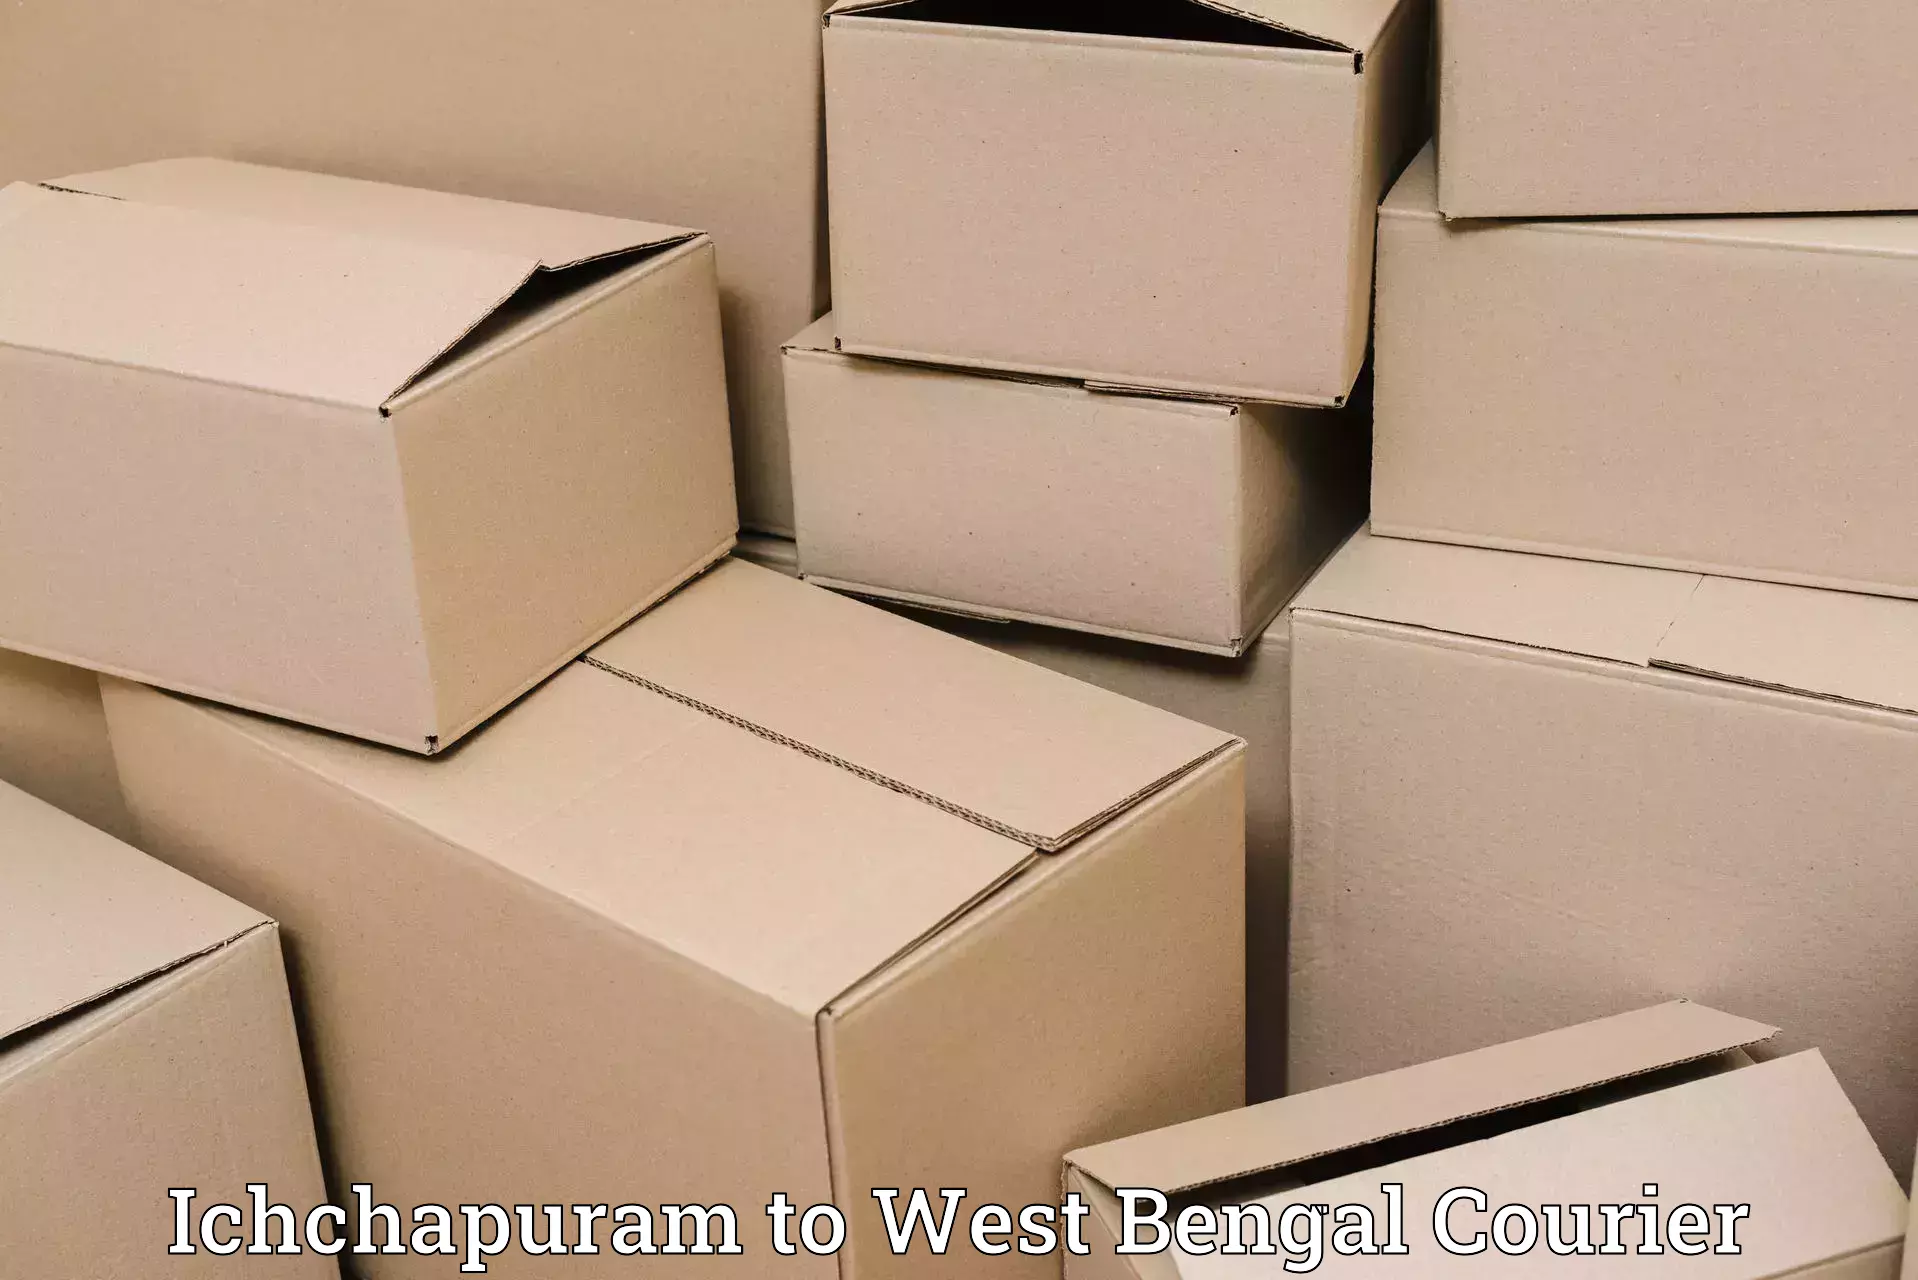 Urgent courier needs in Ichchapuram to Fatepur